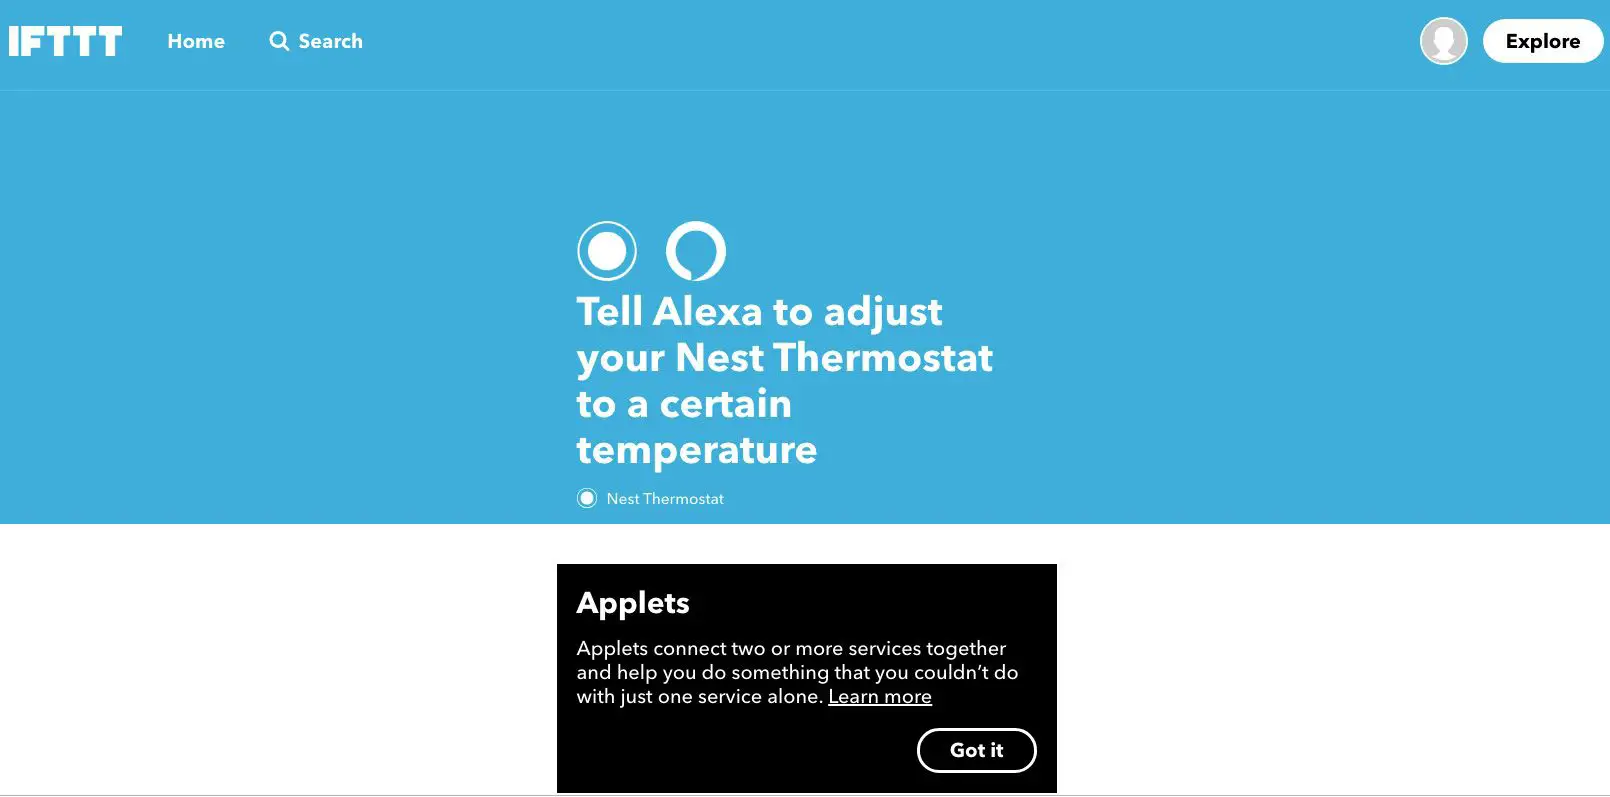 Captura de tela do miniaplicativo IFTTT que instrui Alexa a ajustar o Nest Thermostat